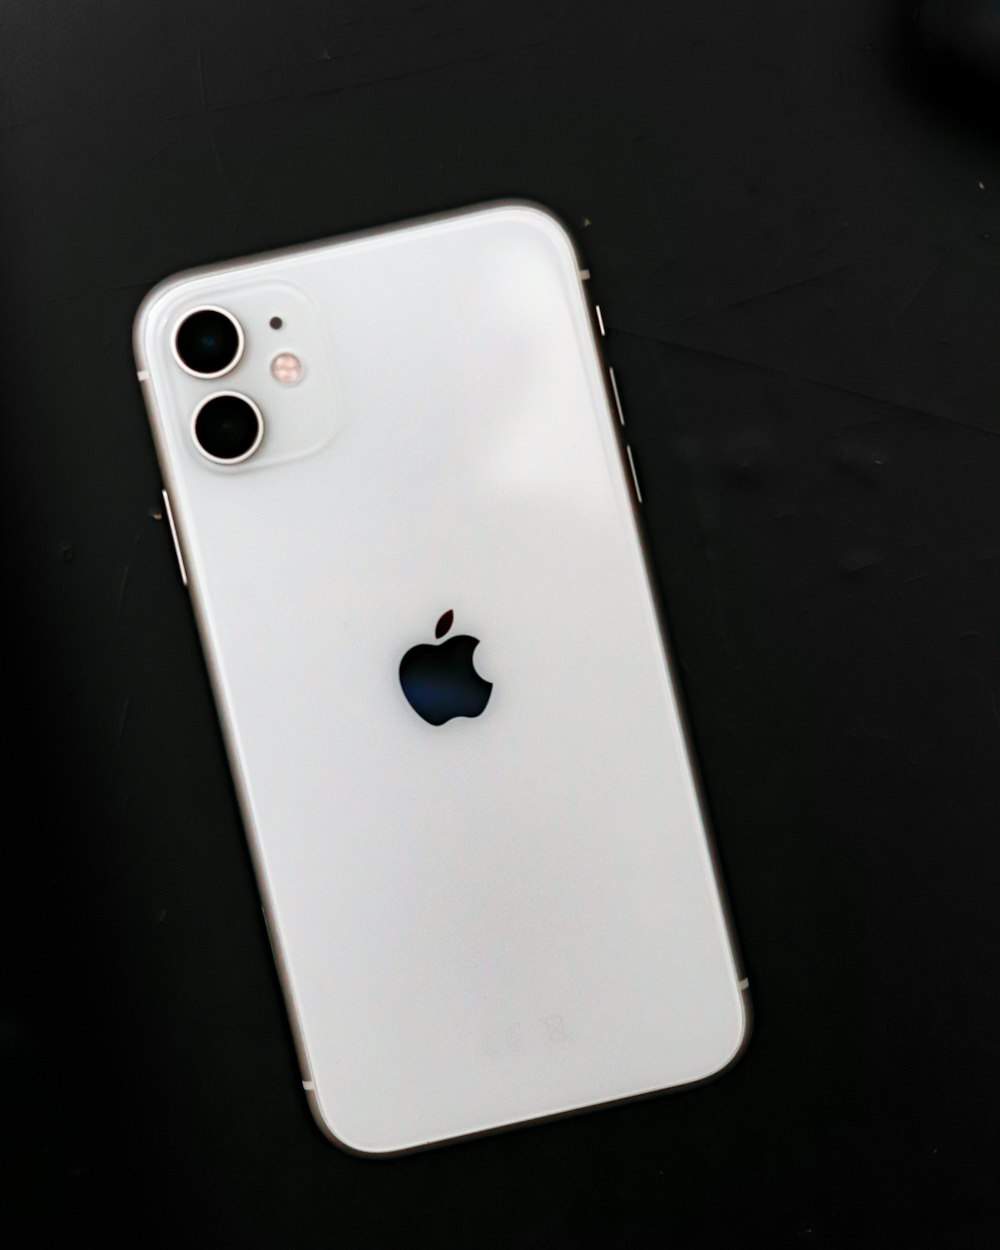 검은 표면에 흰색 아이폰 5 C